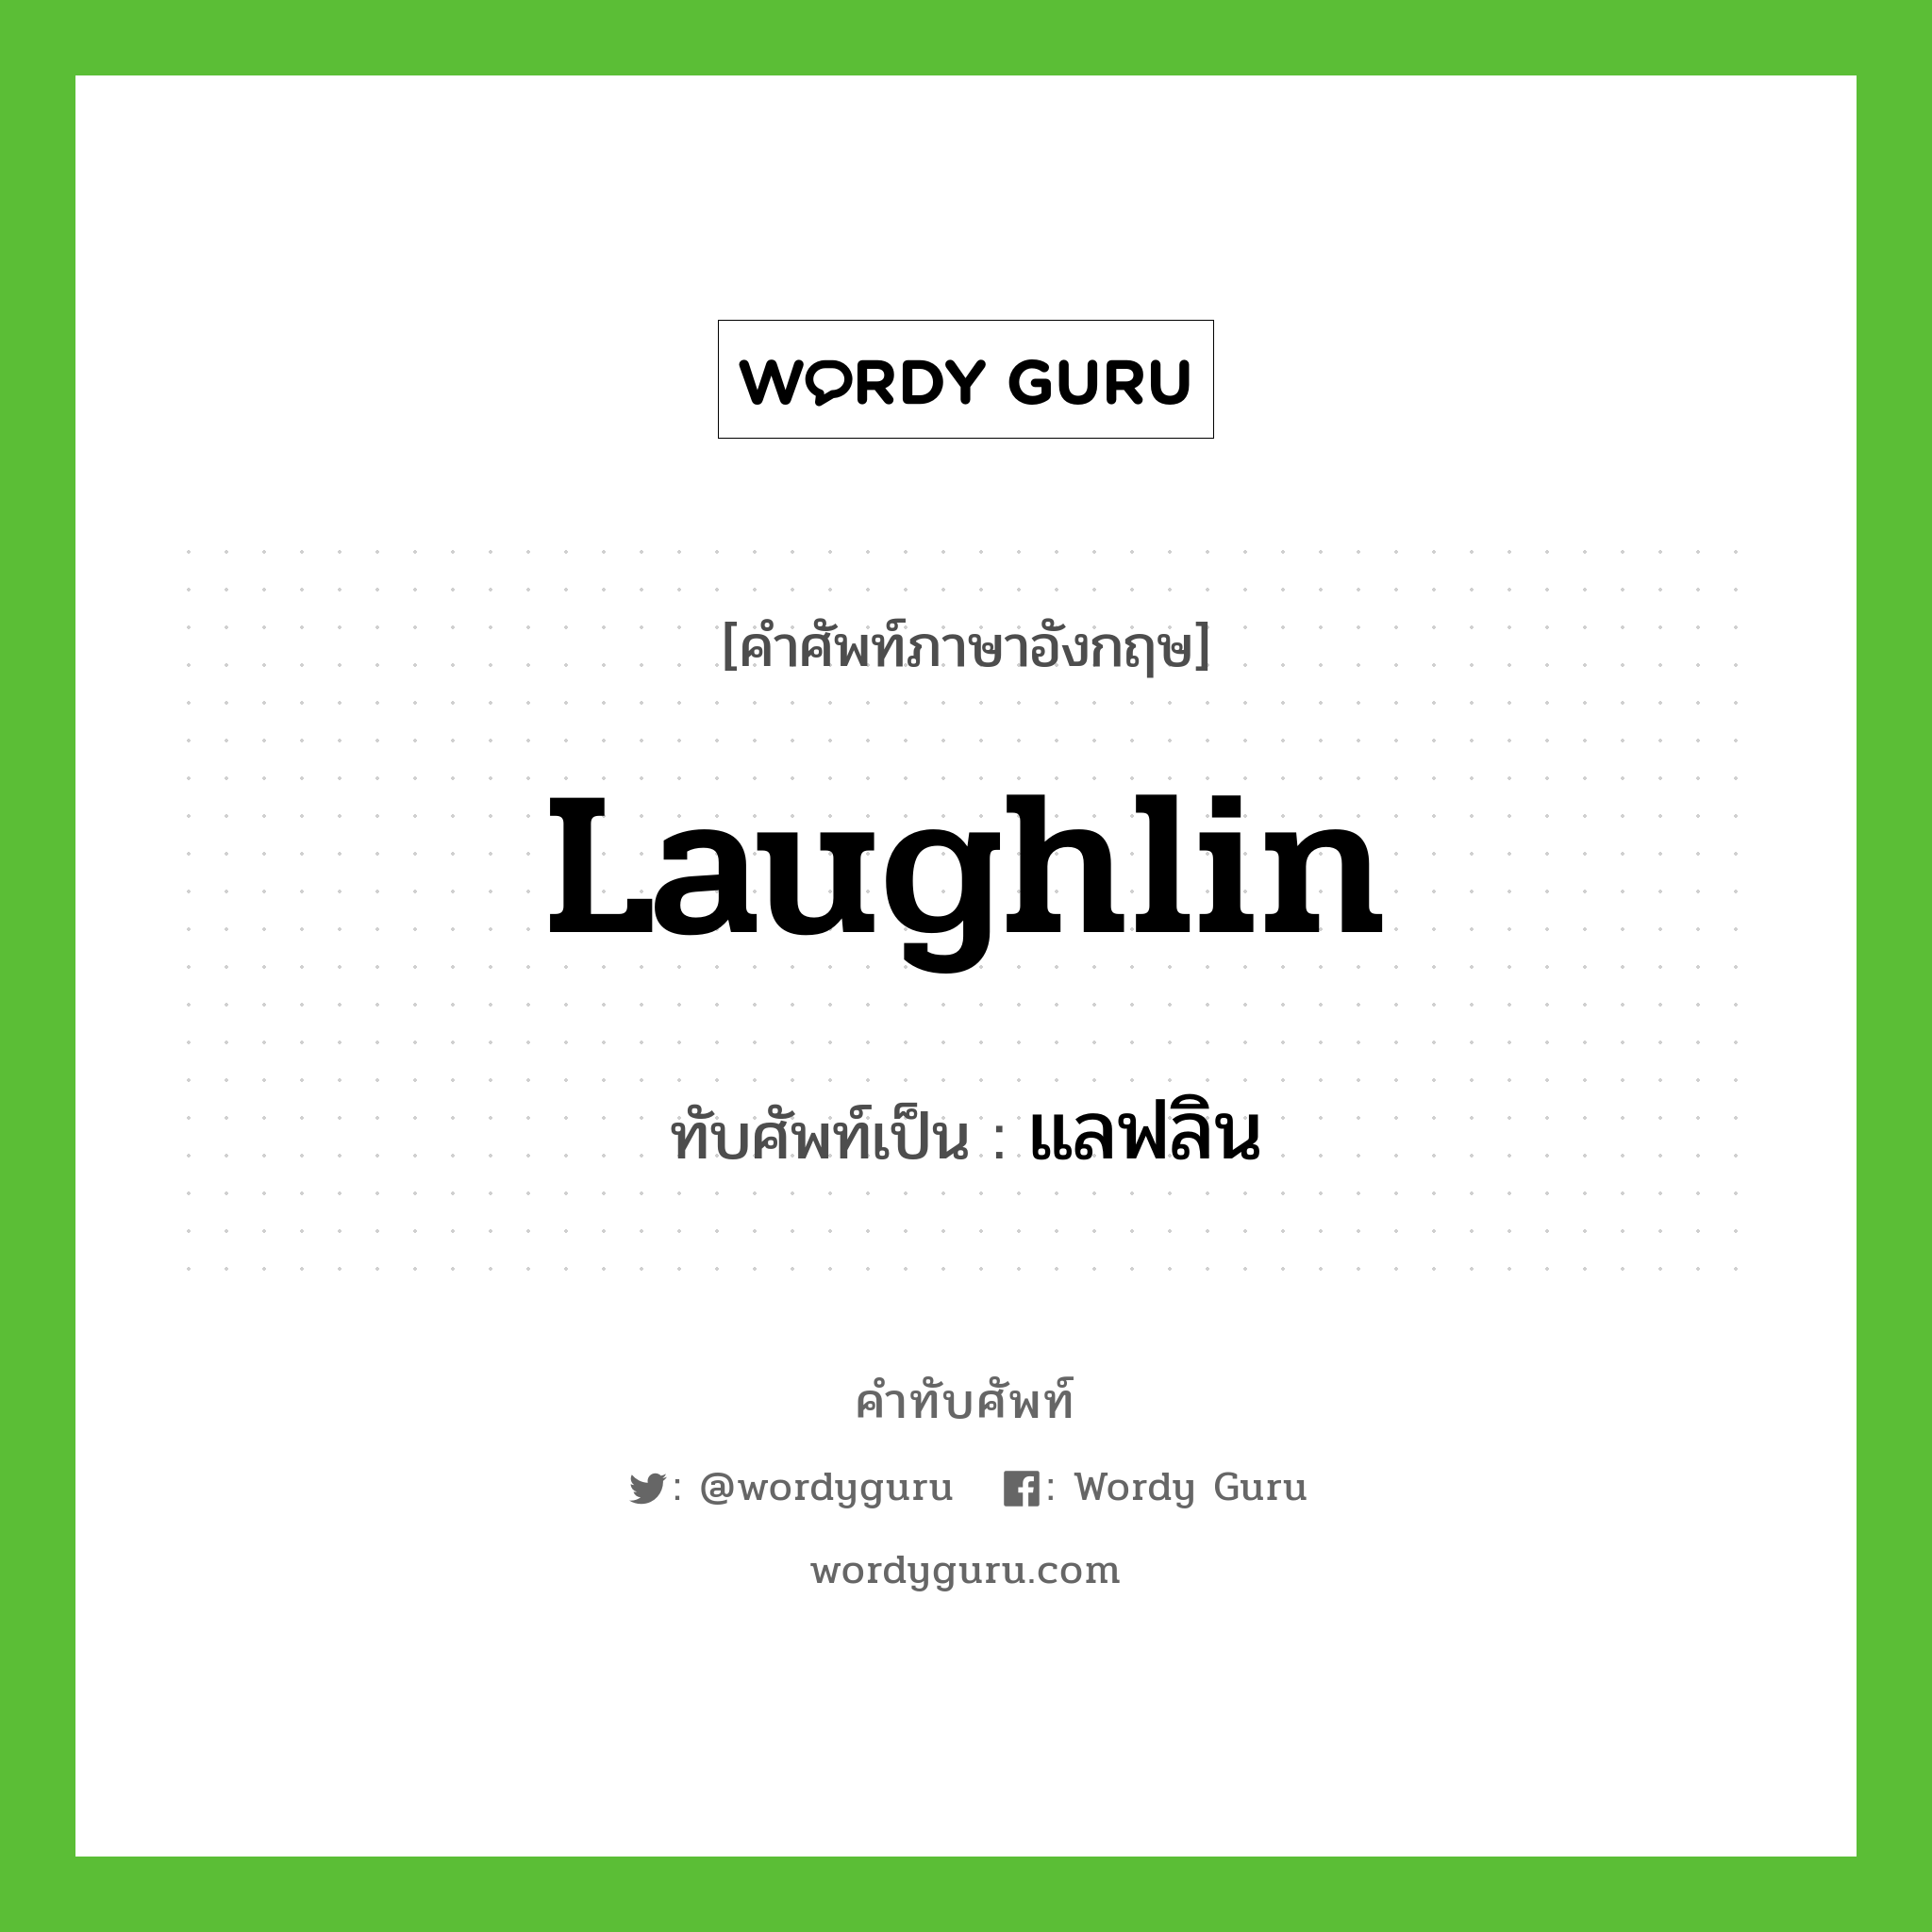 Laughlin เขียนเป็นคำไทยว่าอะไร?, คำศัพท์ภาษาอังกฤษ Laughlin ทับศัพท์เป็น แลฟลิน